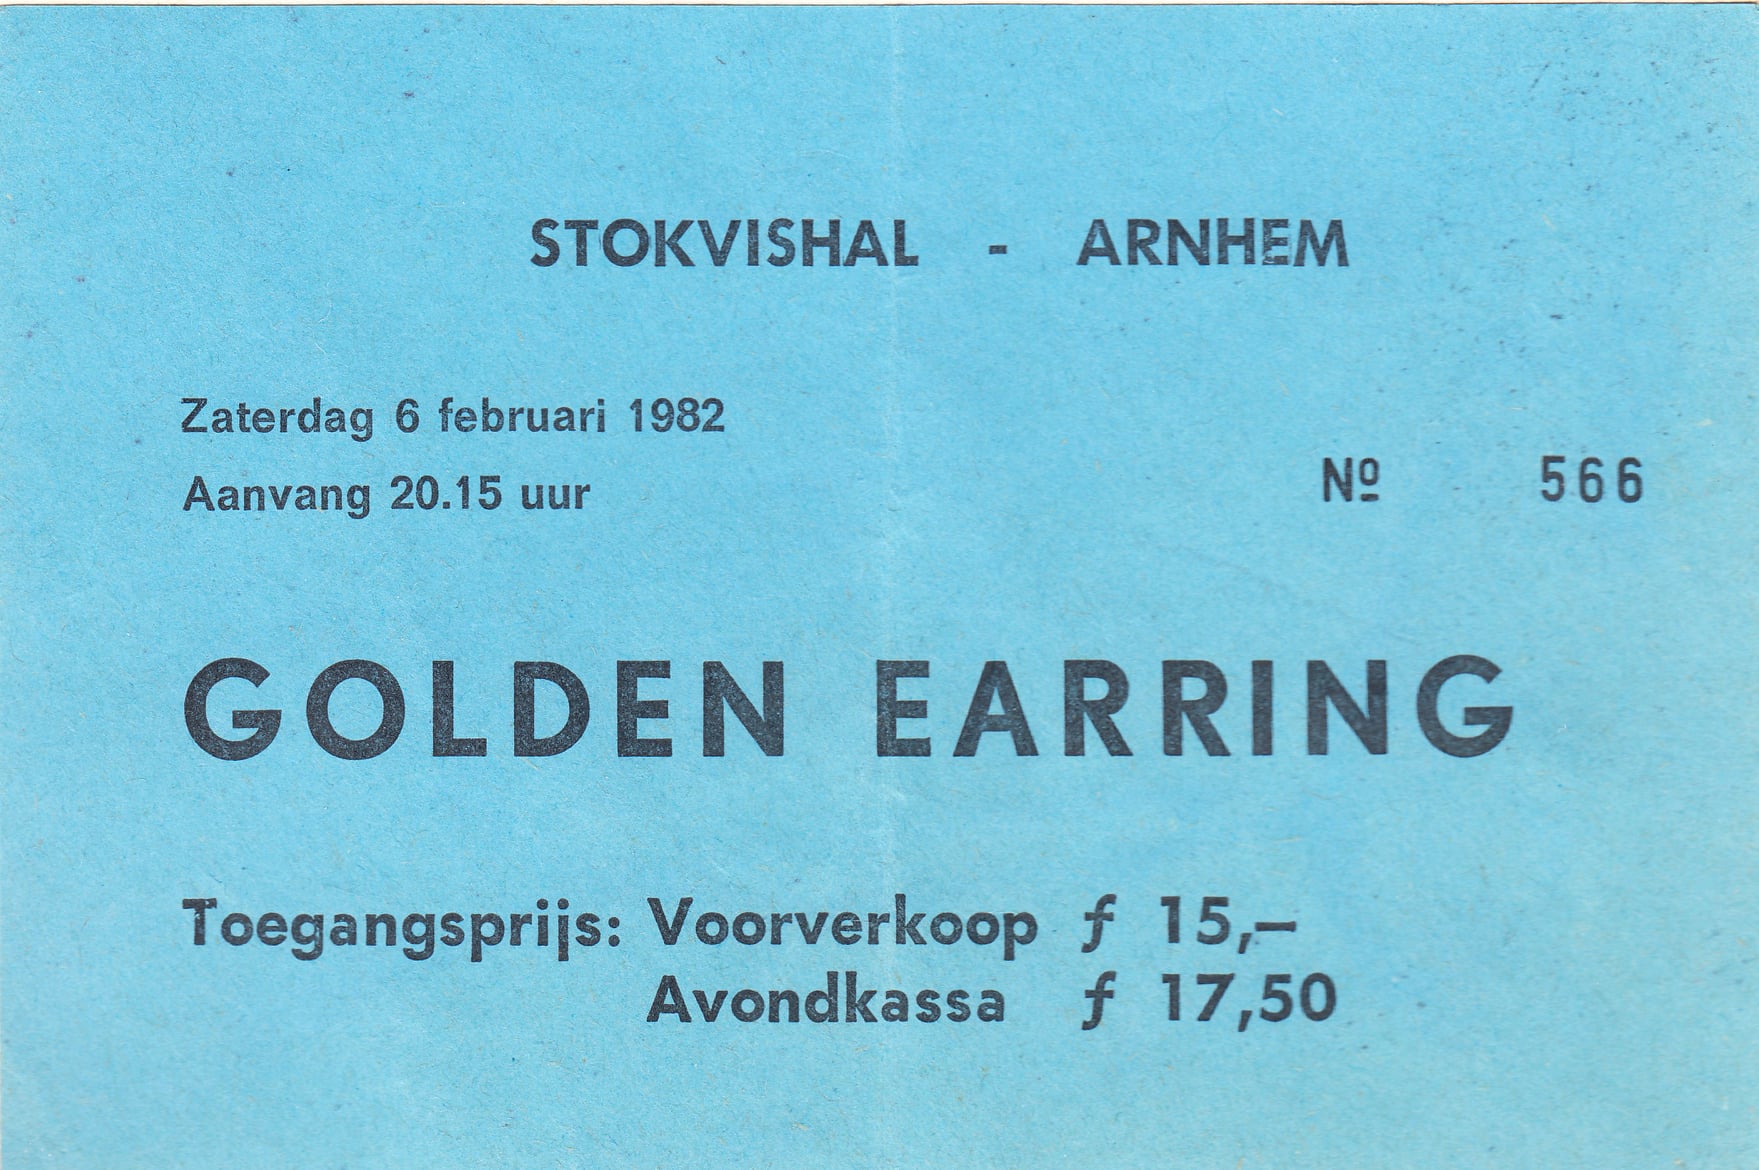 Golden Earring concert ticket#566 February 06 1982 Arnhem - Stokvishal concert